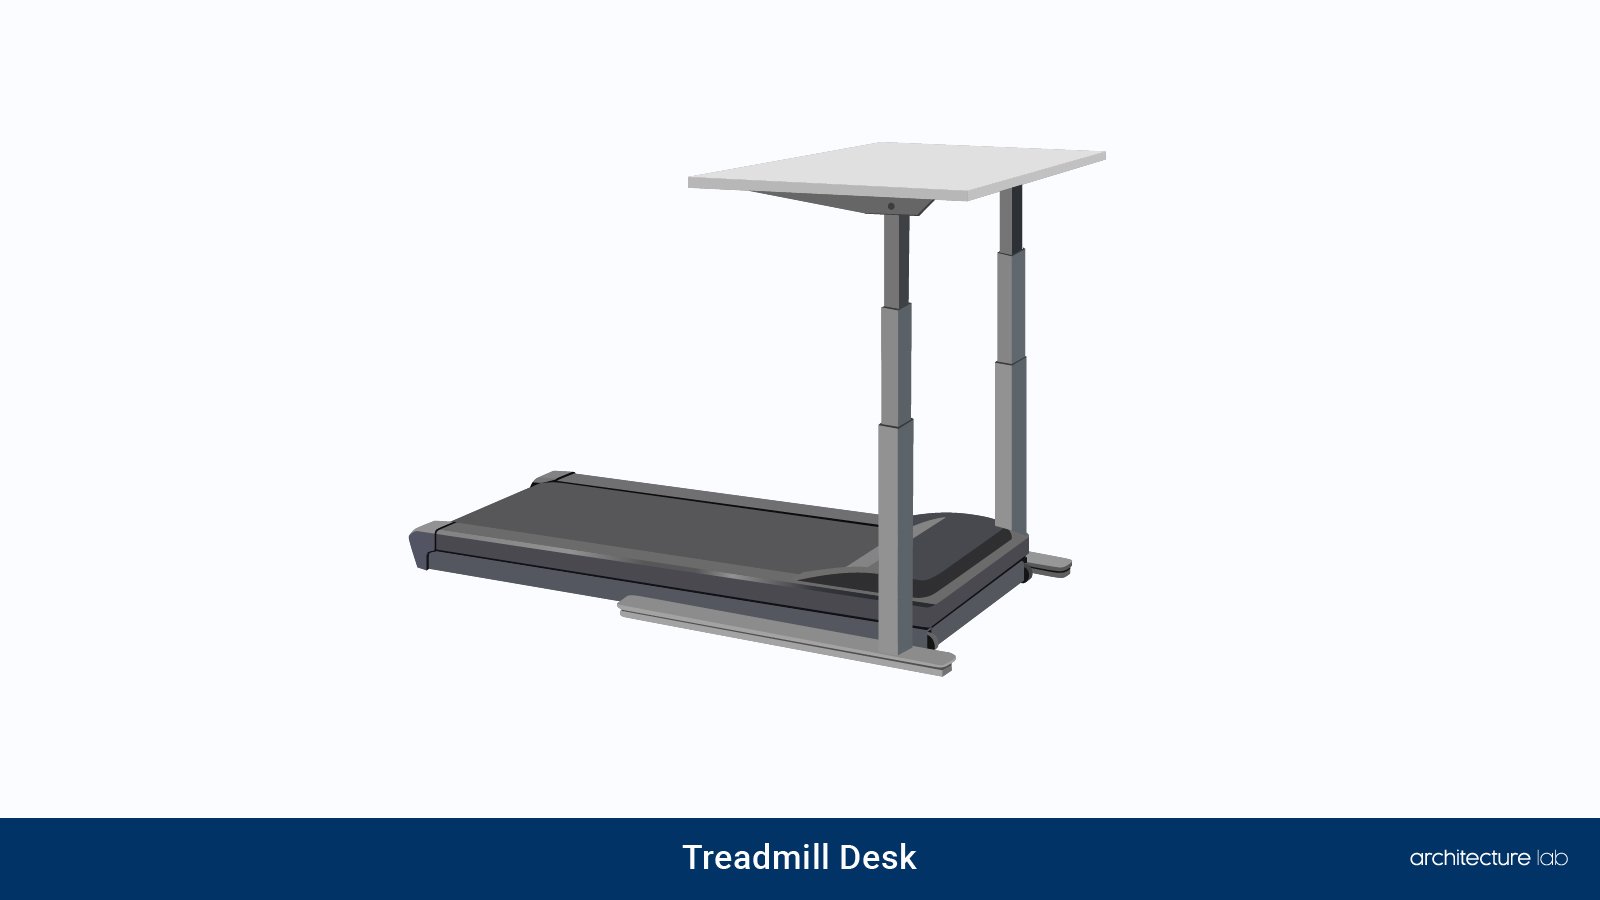 15. Treadmill desk